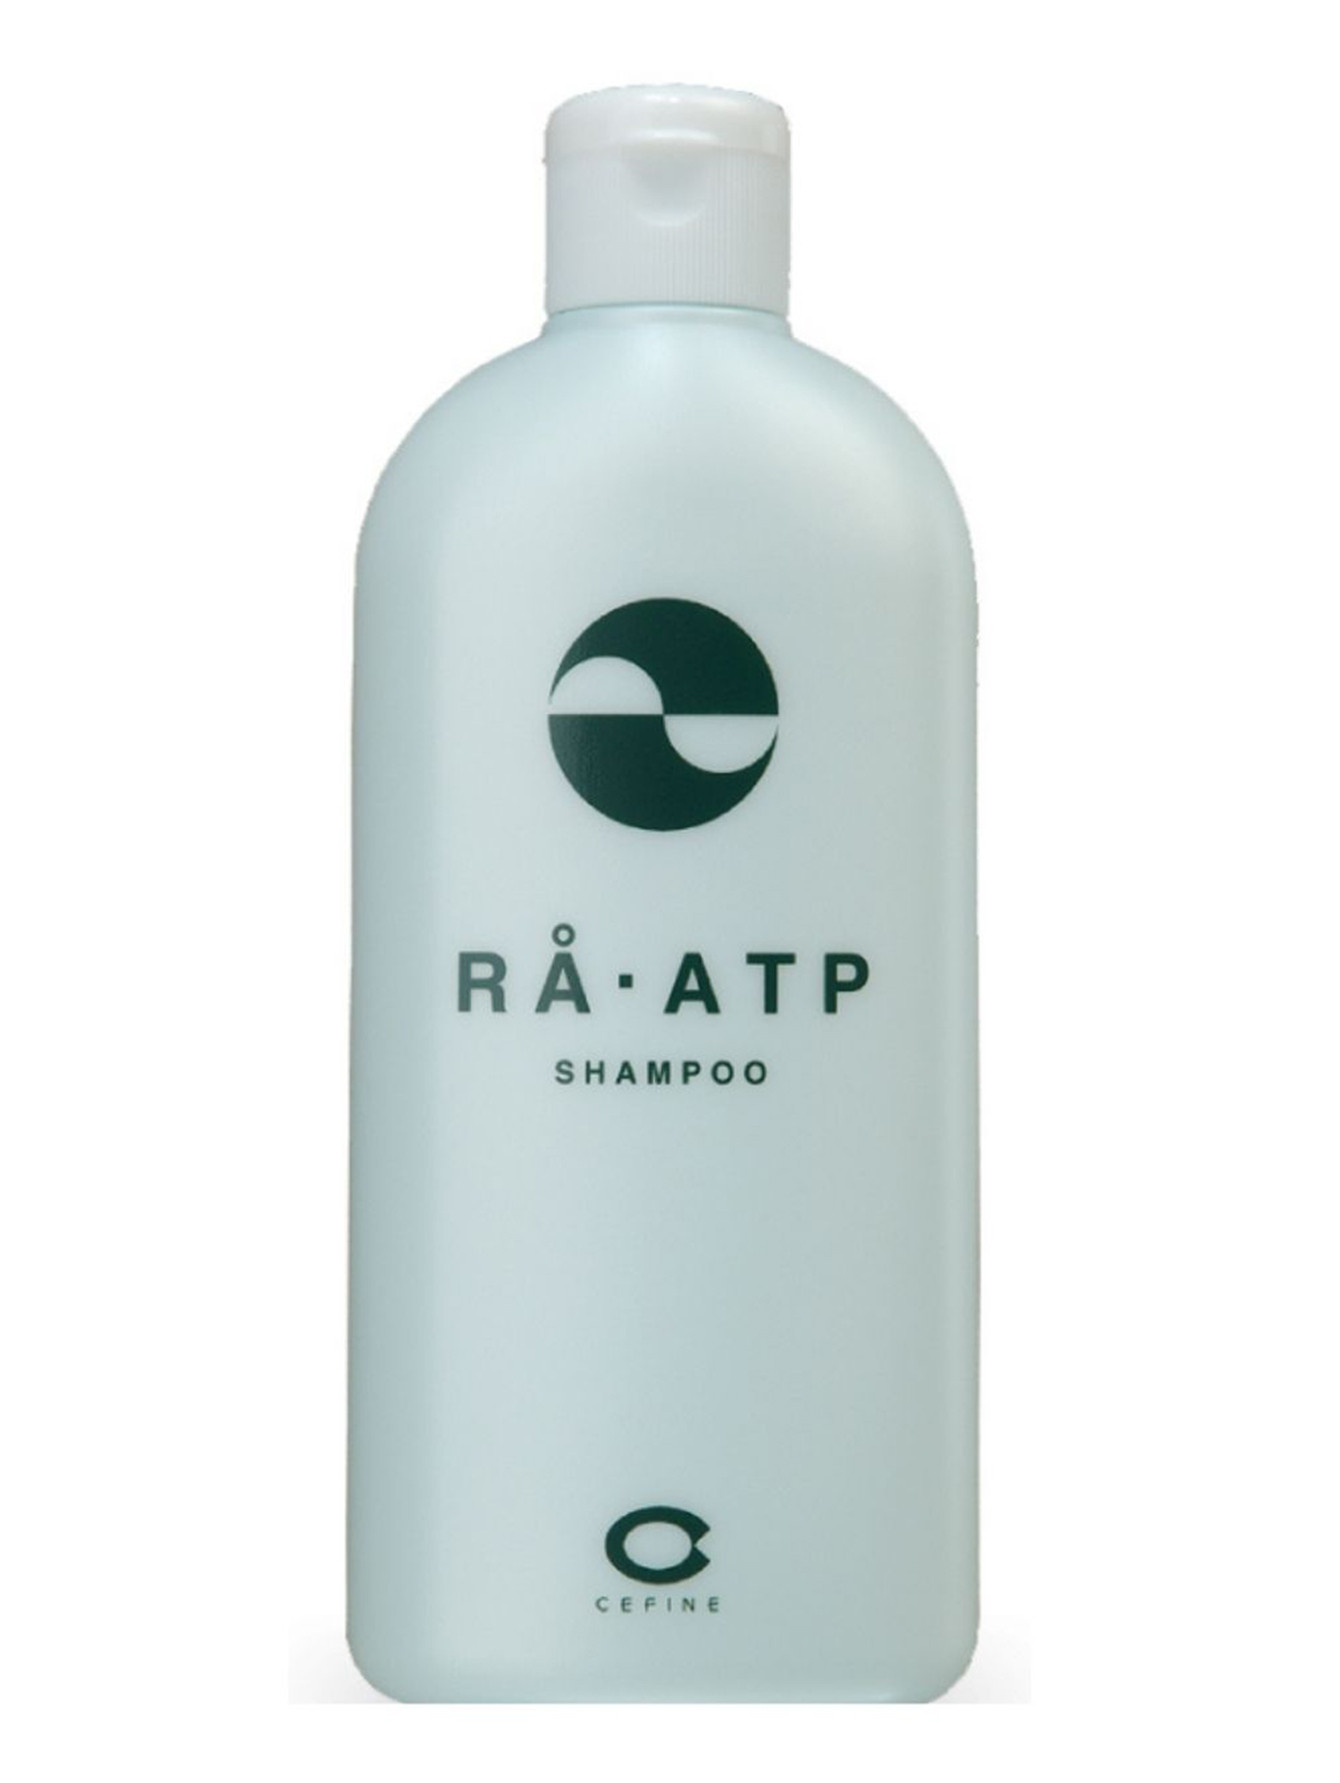  Шампунь против выпадения волос - Ra Atp, 300ml - Общий вид